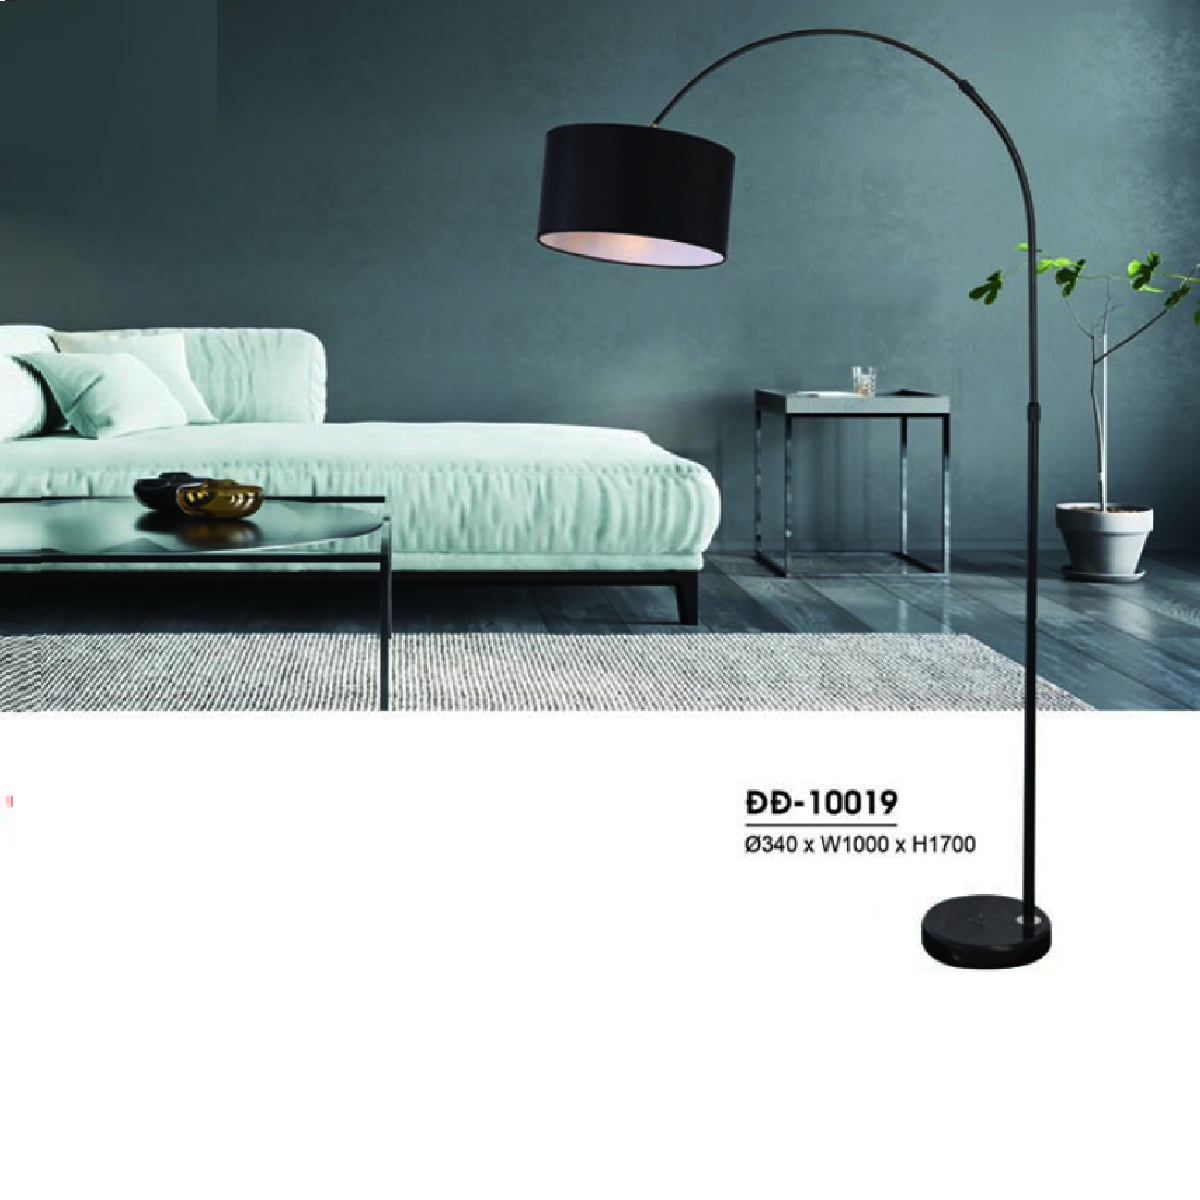 HF - ĐB - 10019: Đèn Cây đứng để bàn/ đầu giường  - KT: Ø340mm x W1000mm x H1700mm - Bóng đèn E27 x 1 bóng